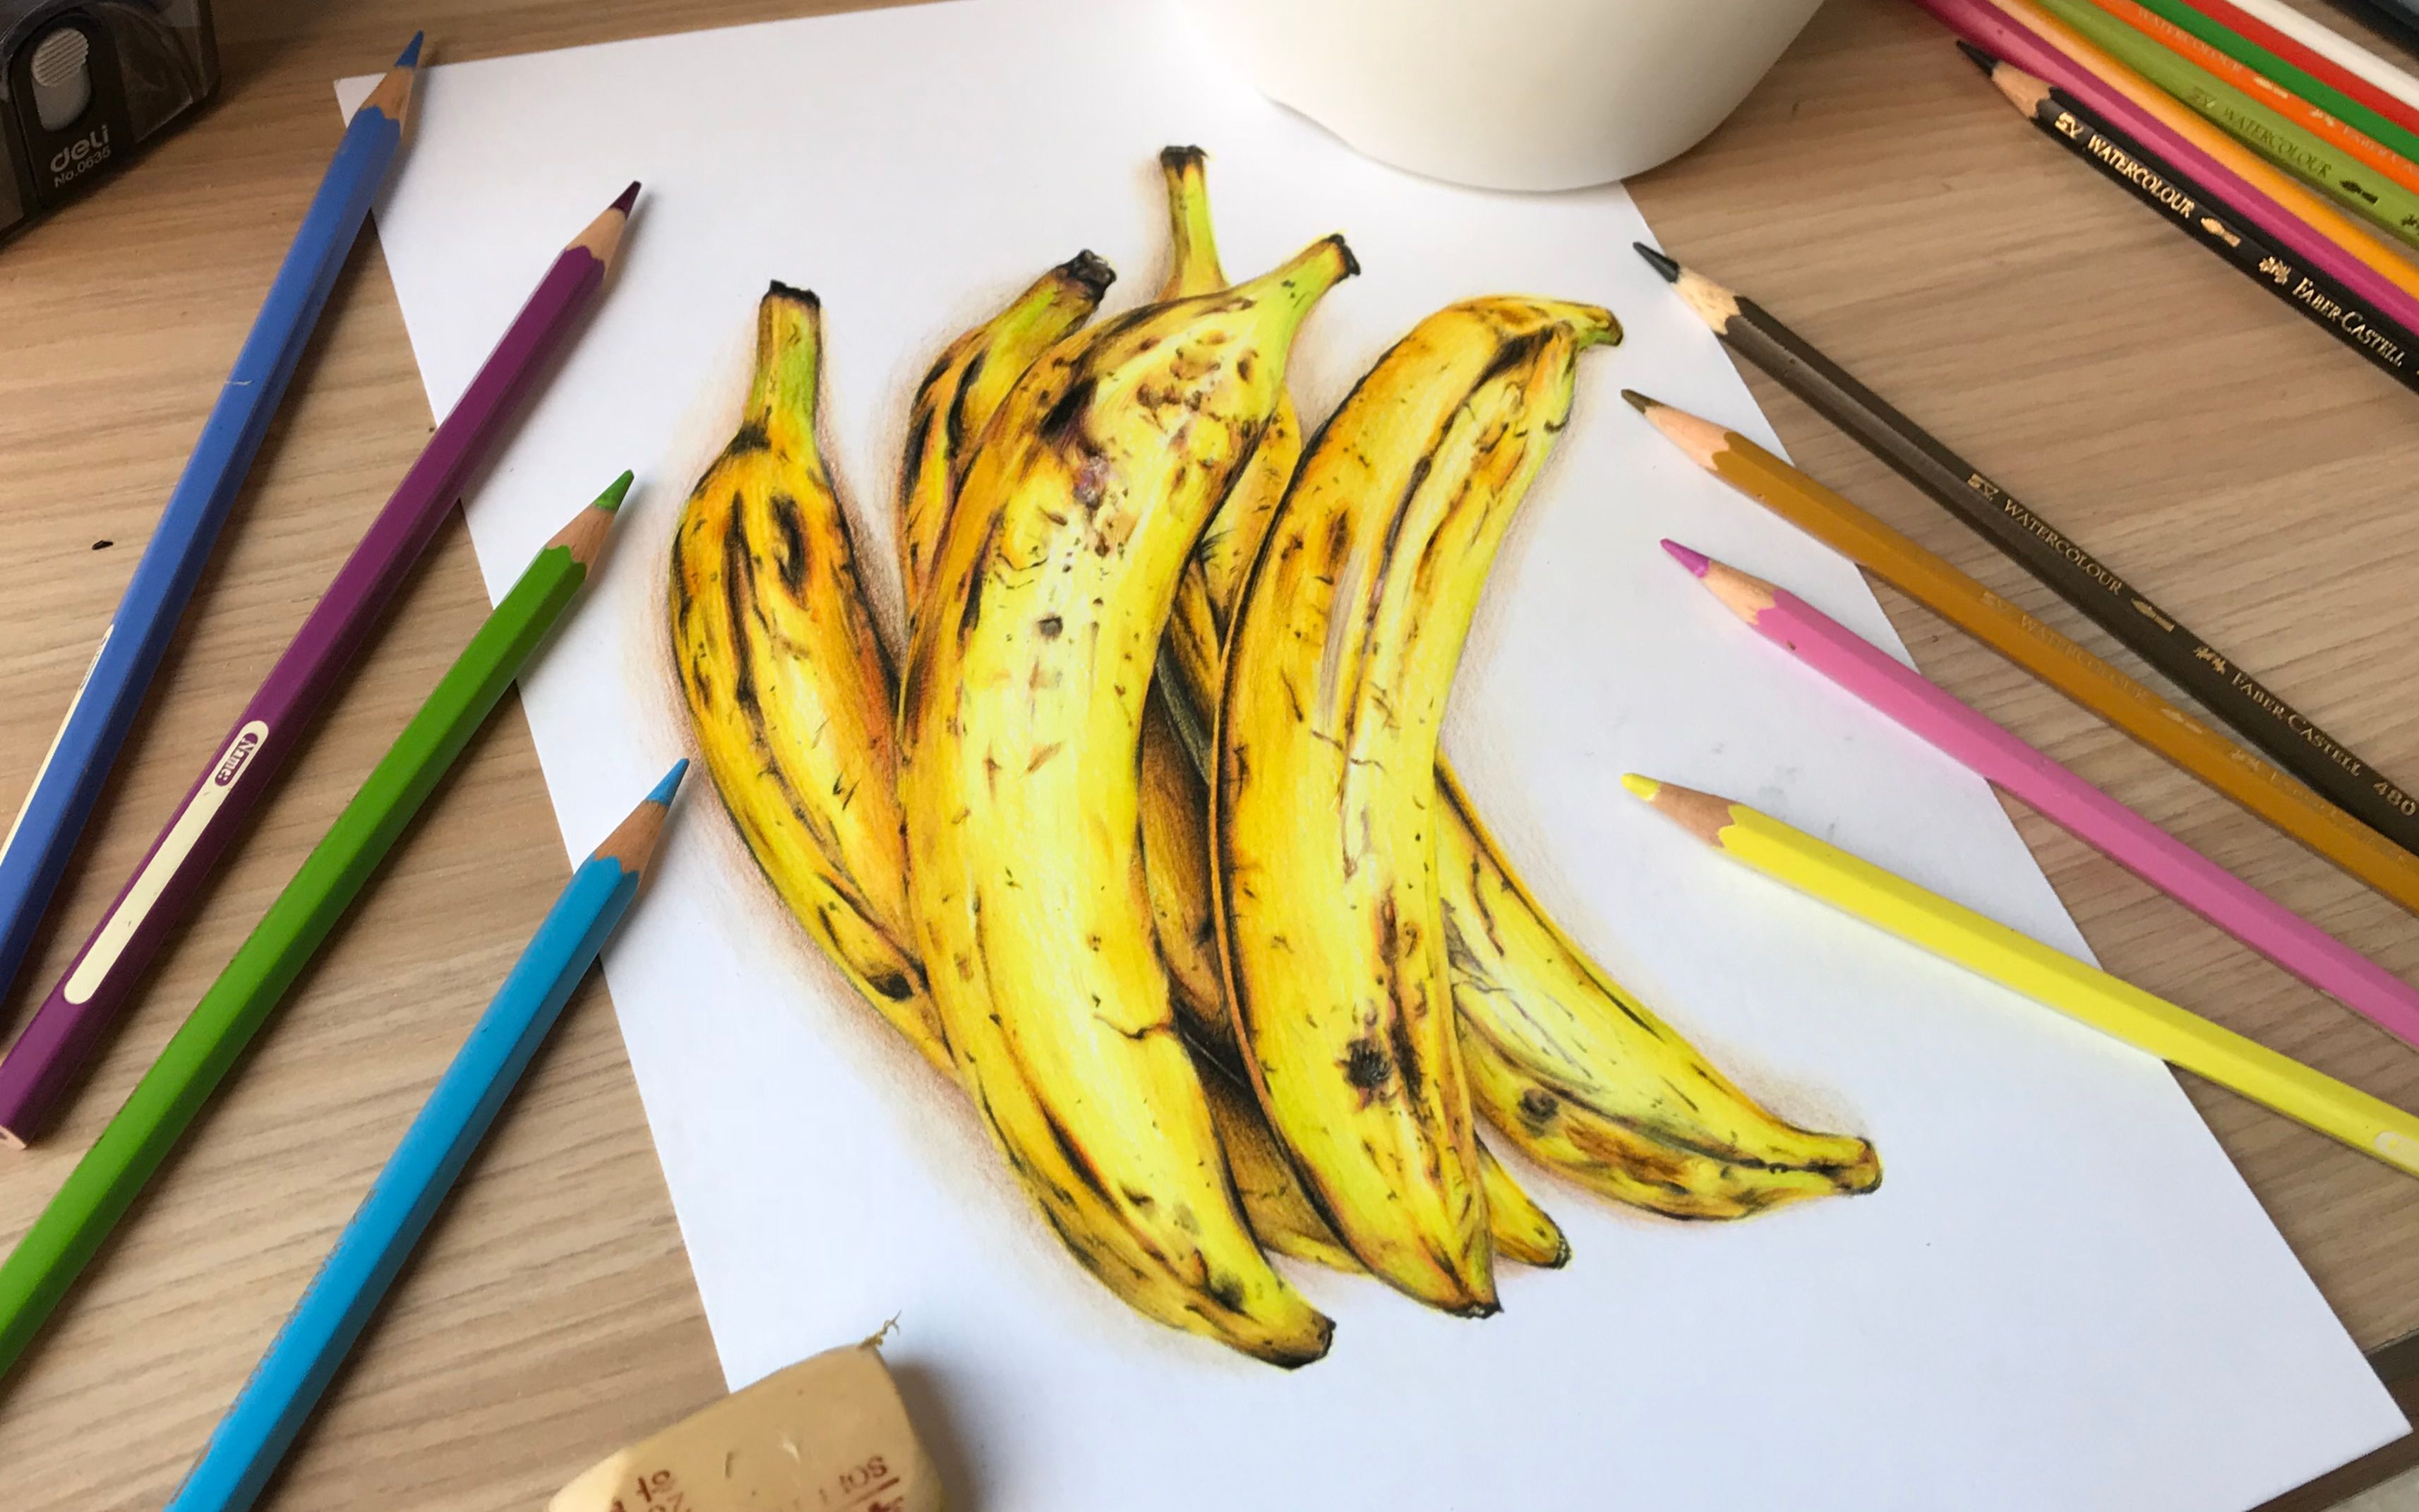 香蕉君手绘图片